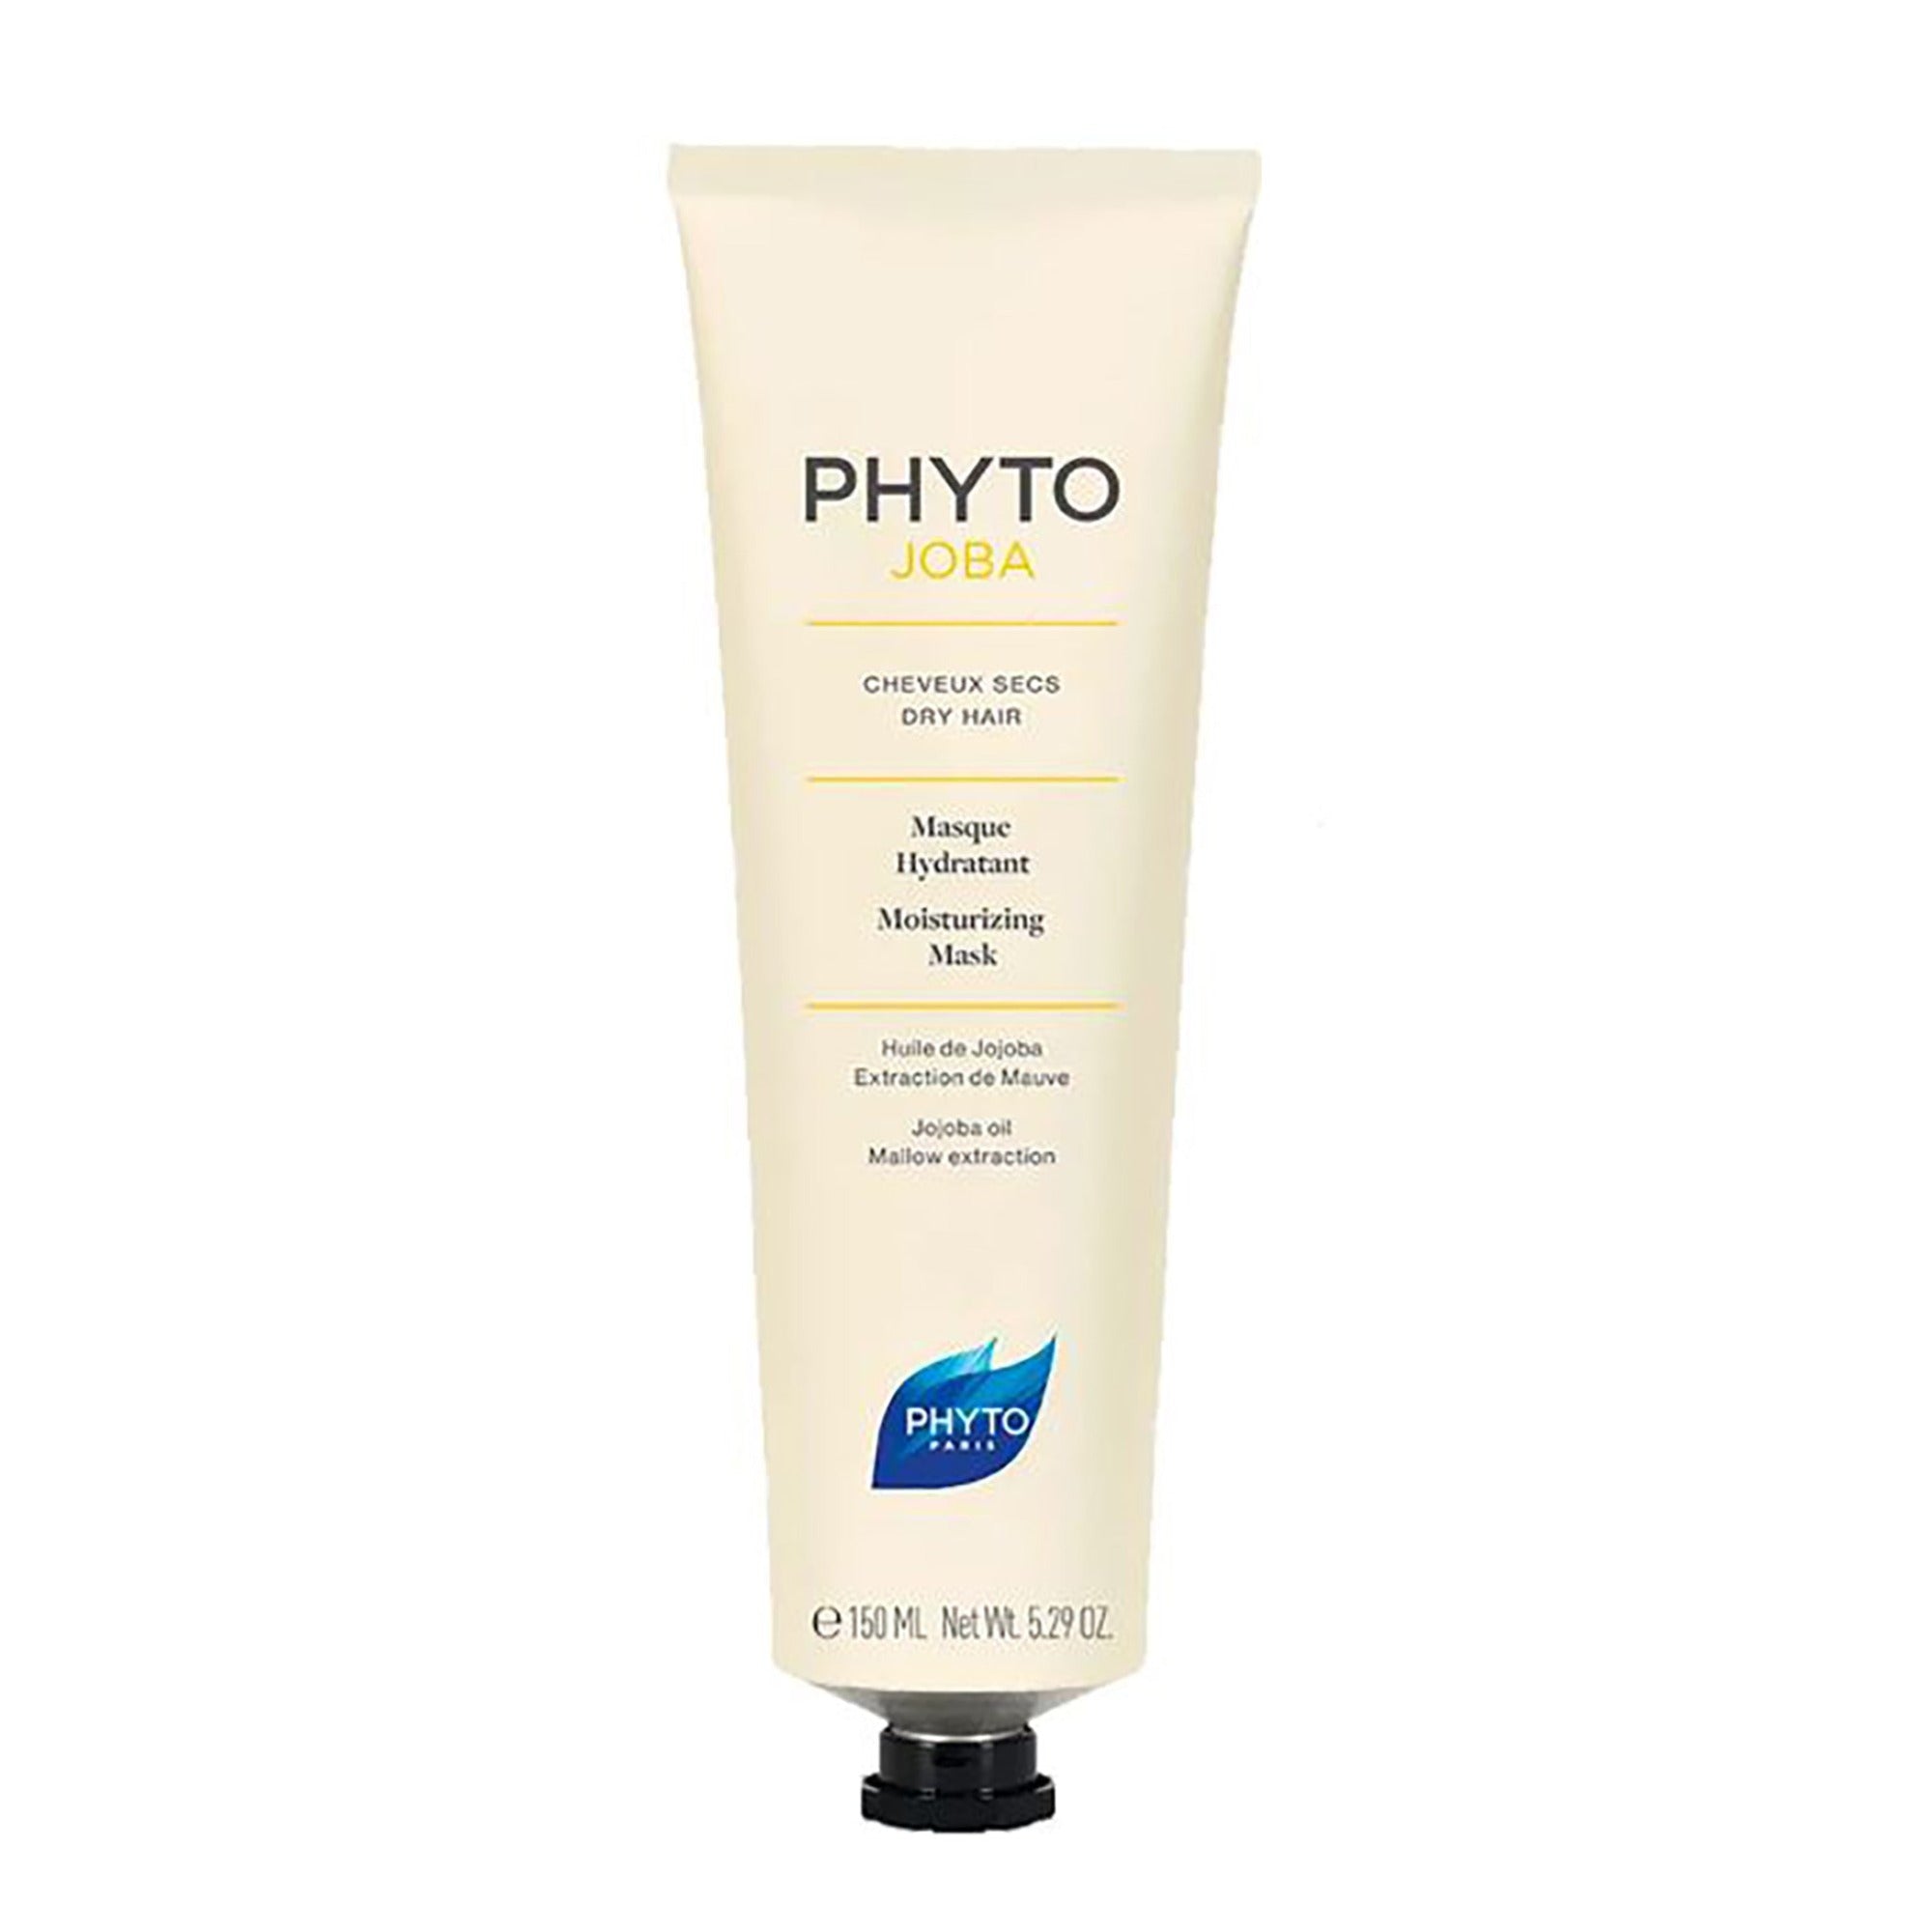 Phyto Phytojoba Masque Hydratant - Moisturizing Mask / 5.2OZ